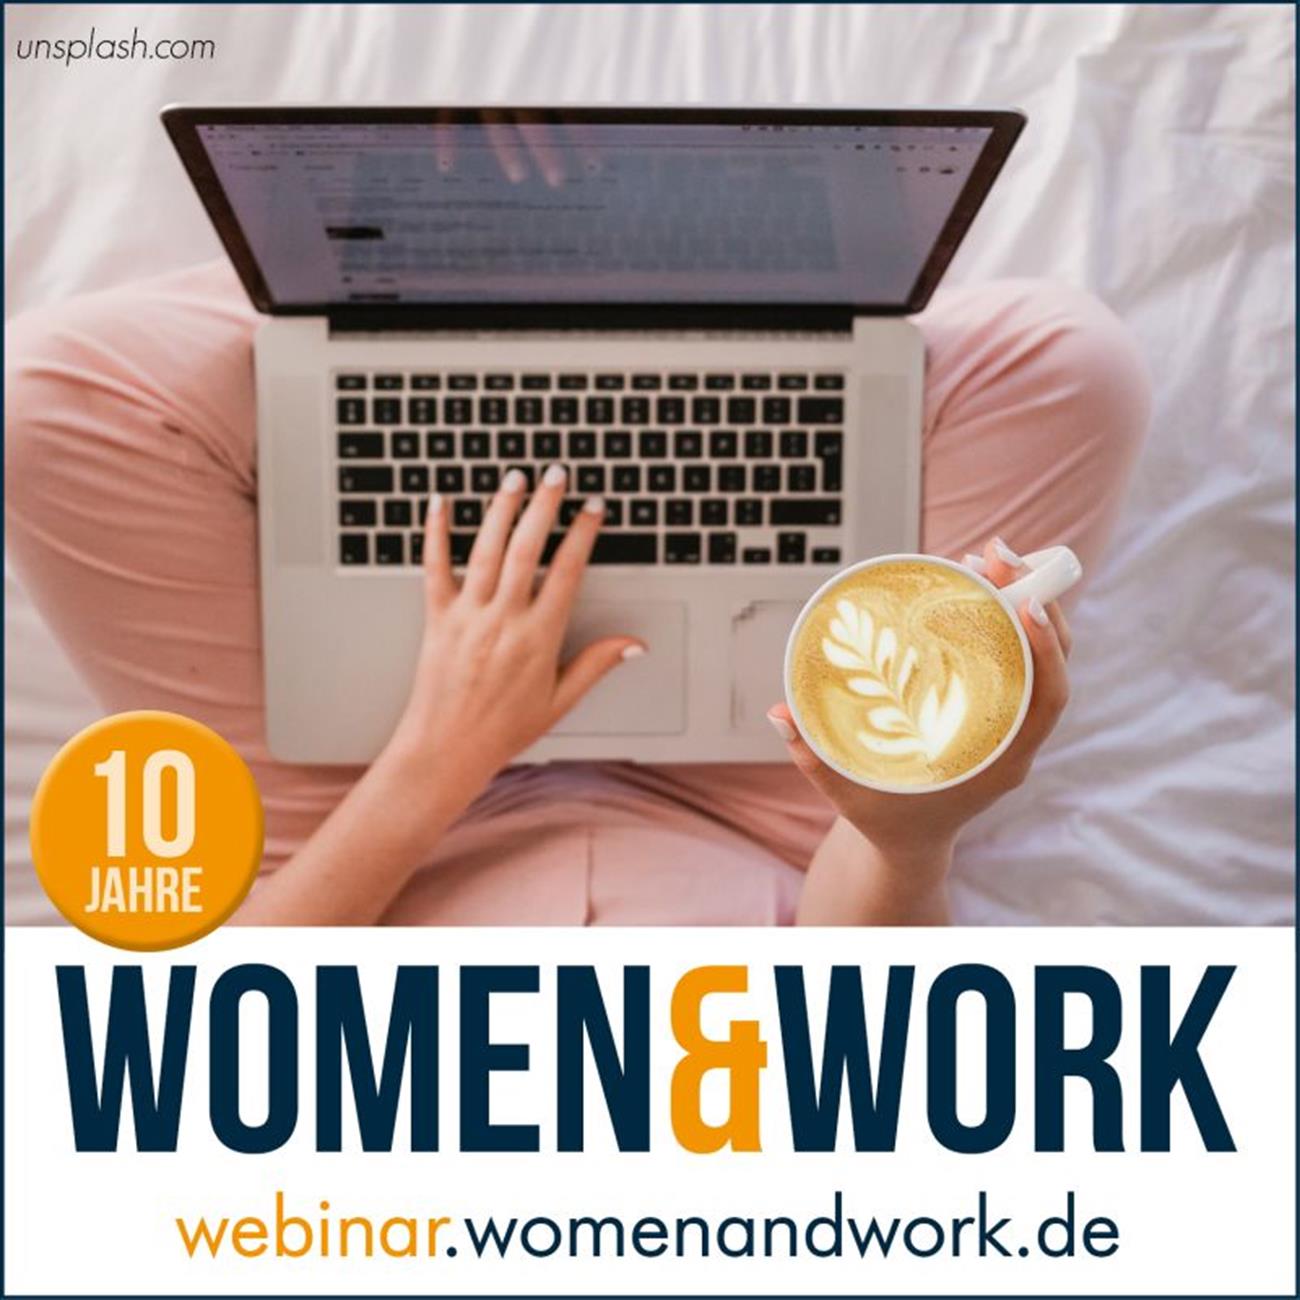 Webinar in Kooperation mit women&work am 16. April 2020